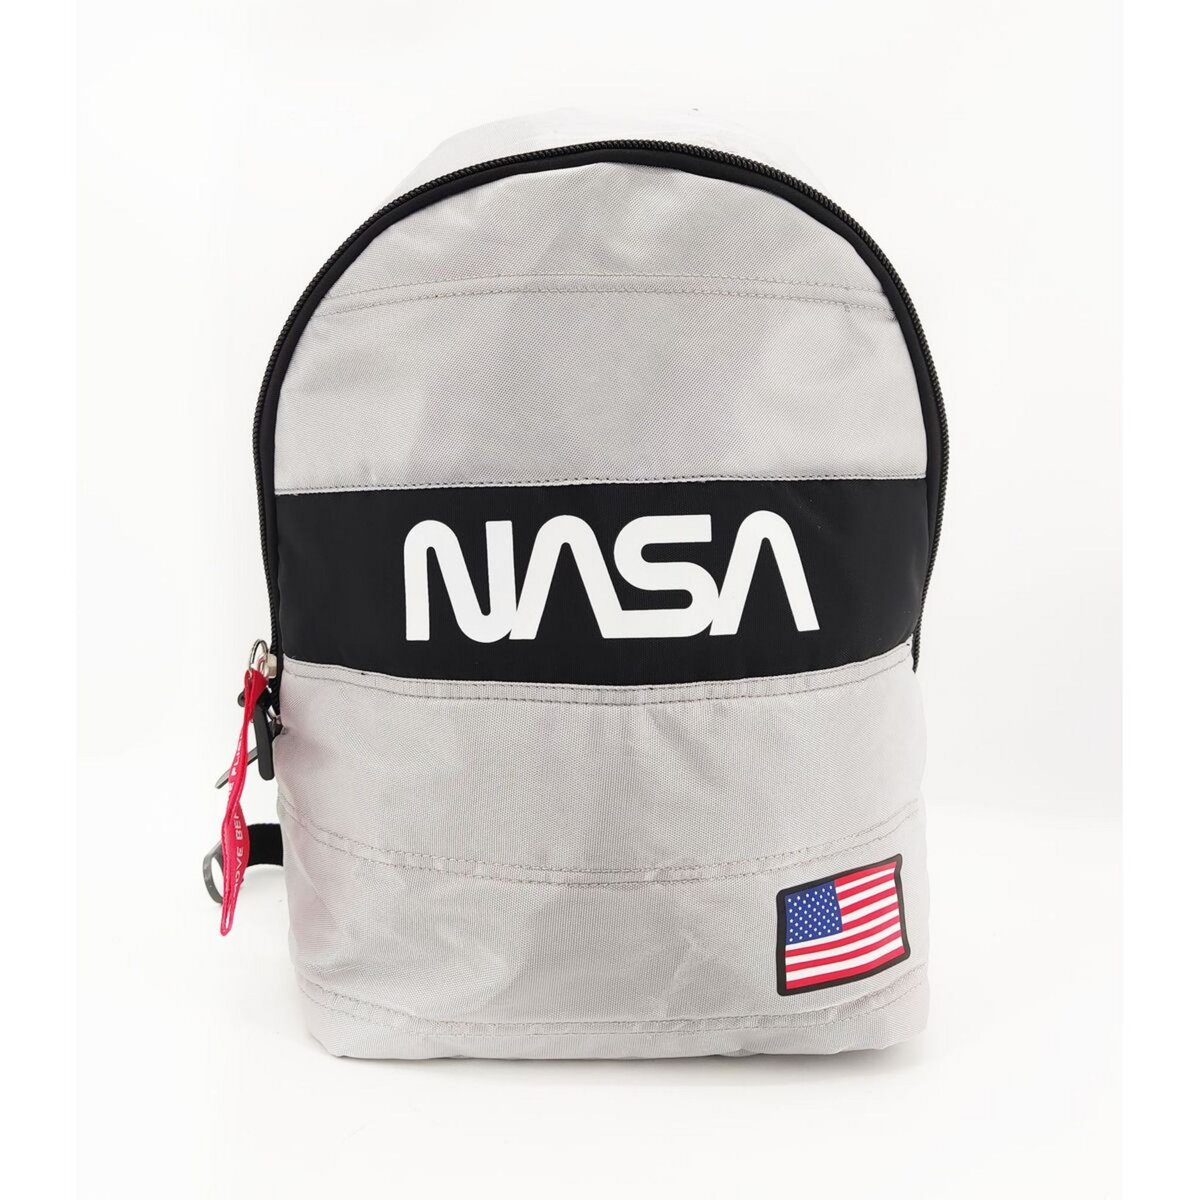 NASA Sac à dos 1 compartiment noir et blanc NASA + casquette noire et blanche NASA